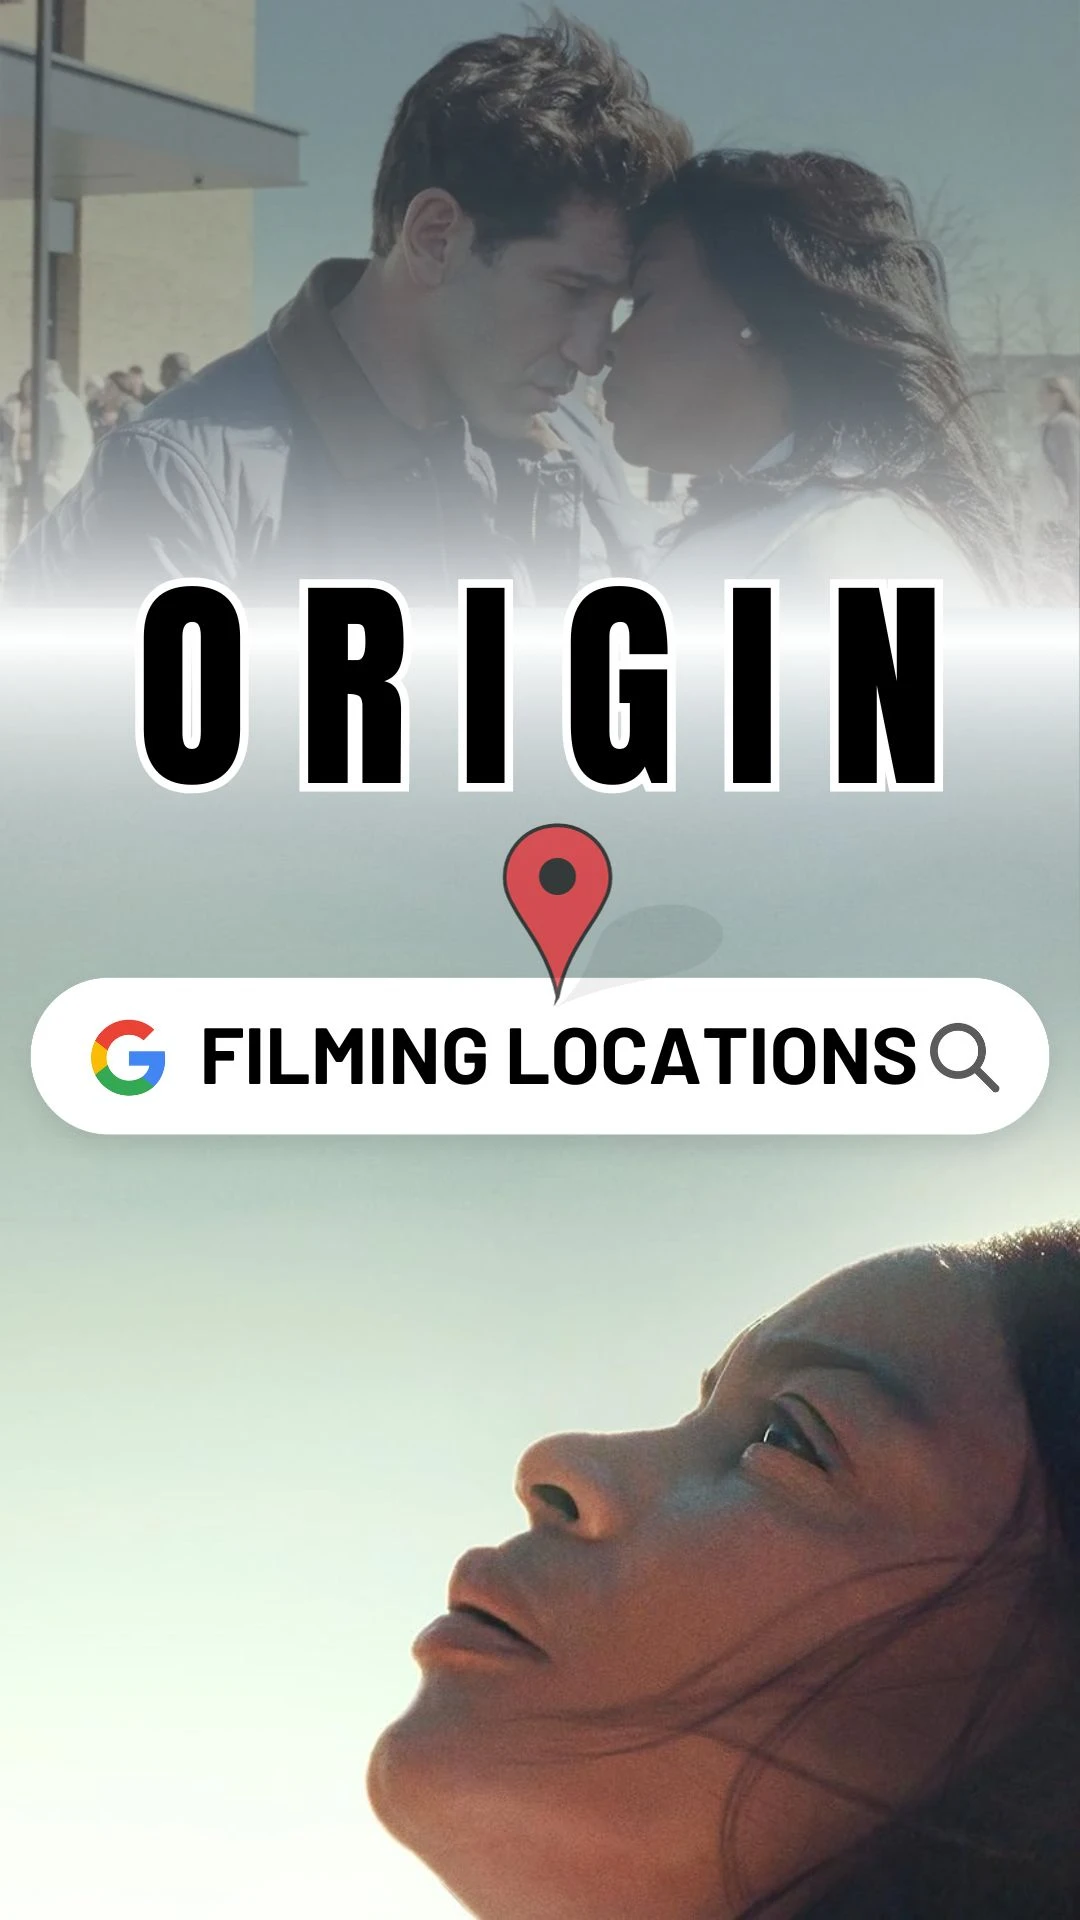 Origin Filming Locations